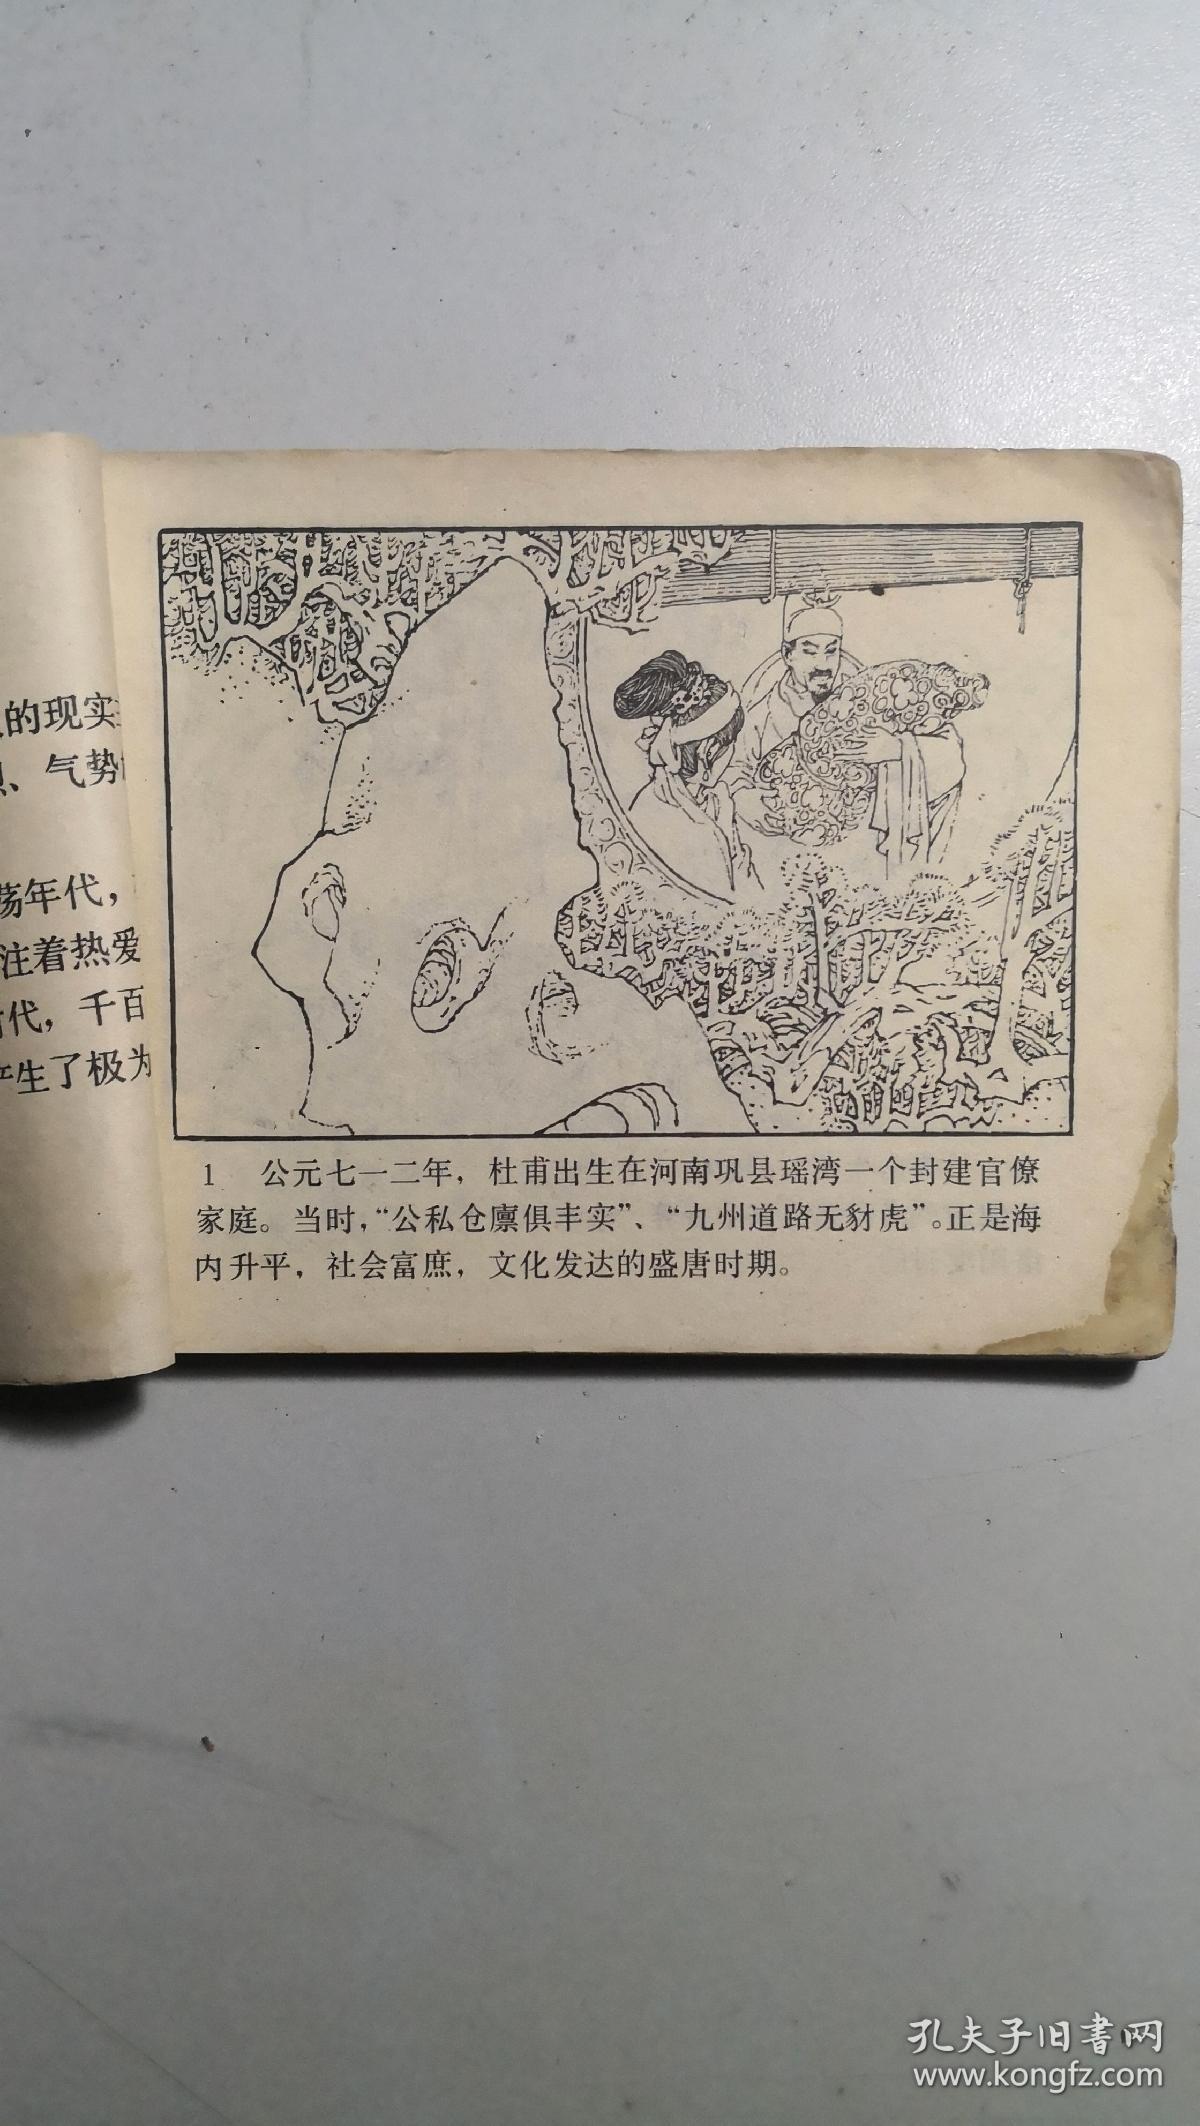 岭南版连环画《杜甫》，文学家的故事丛书本，发行量小。